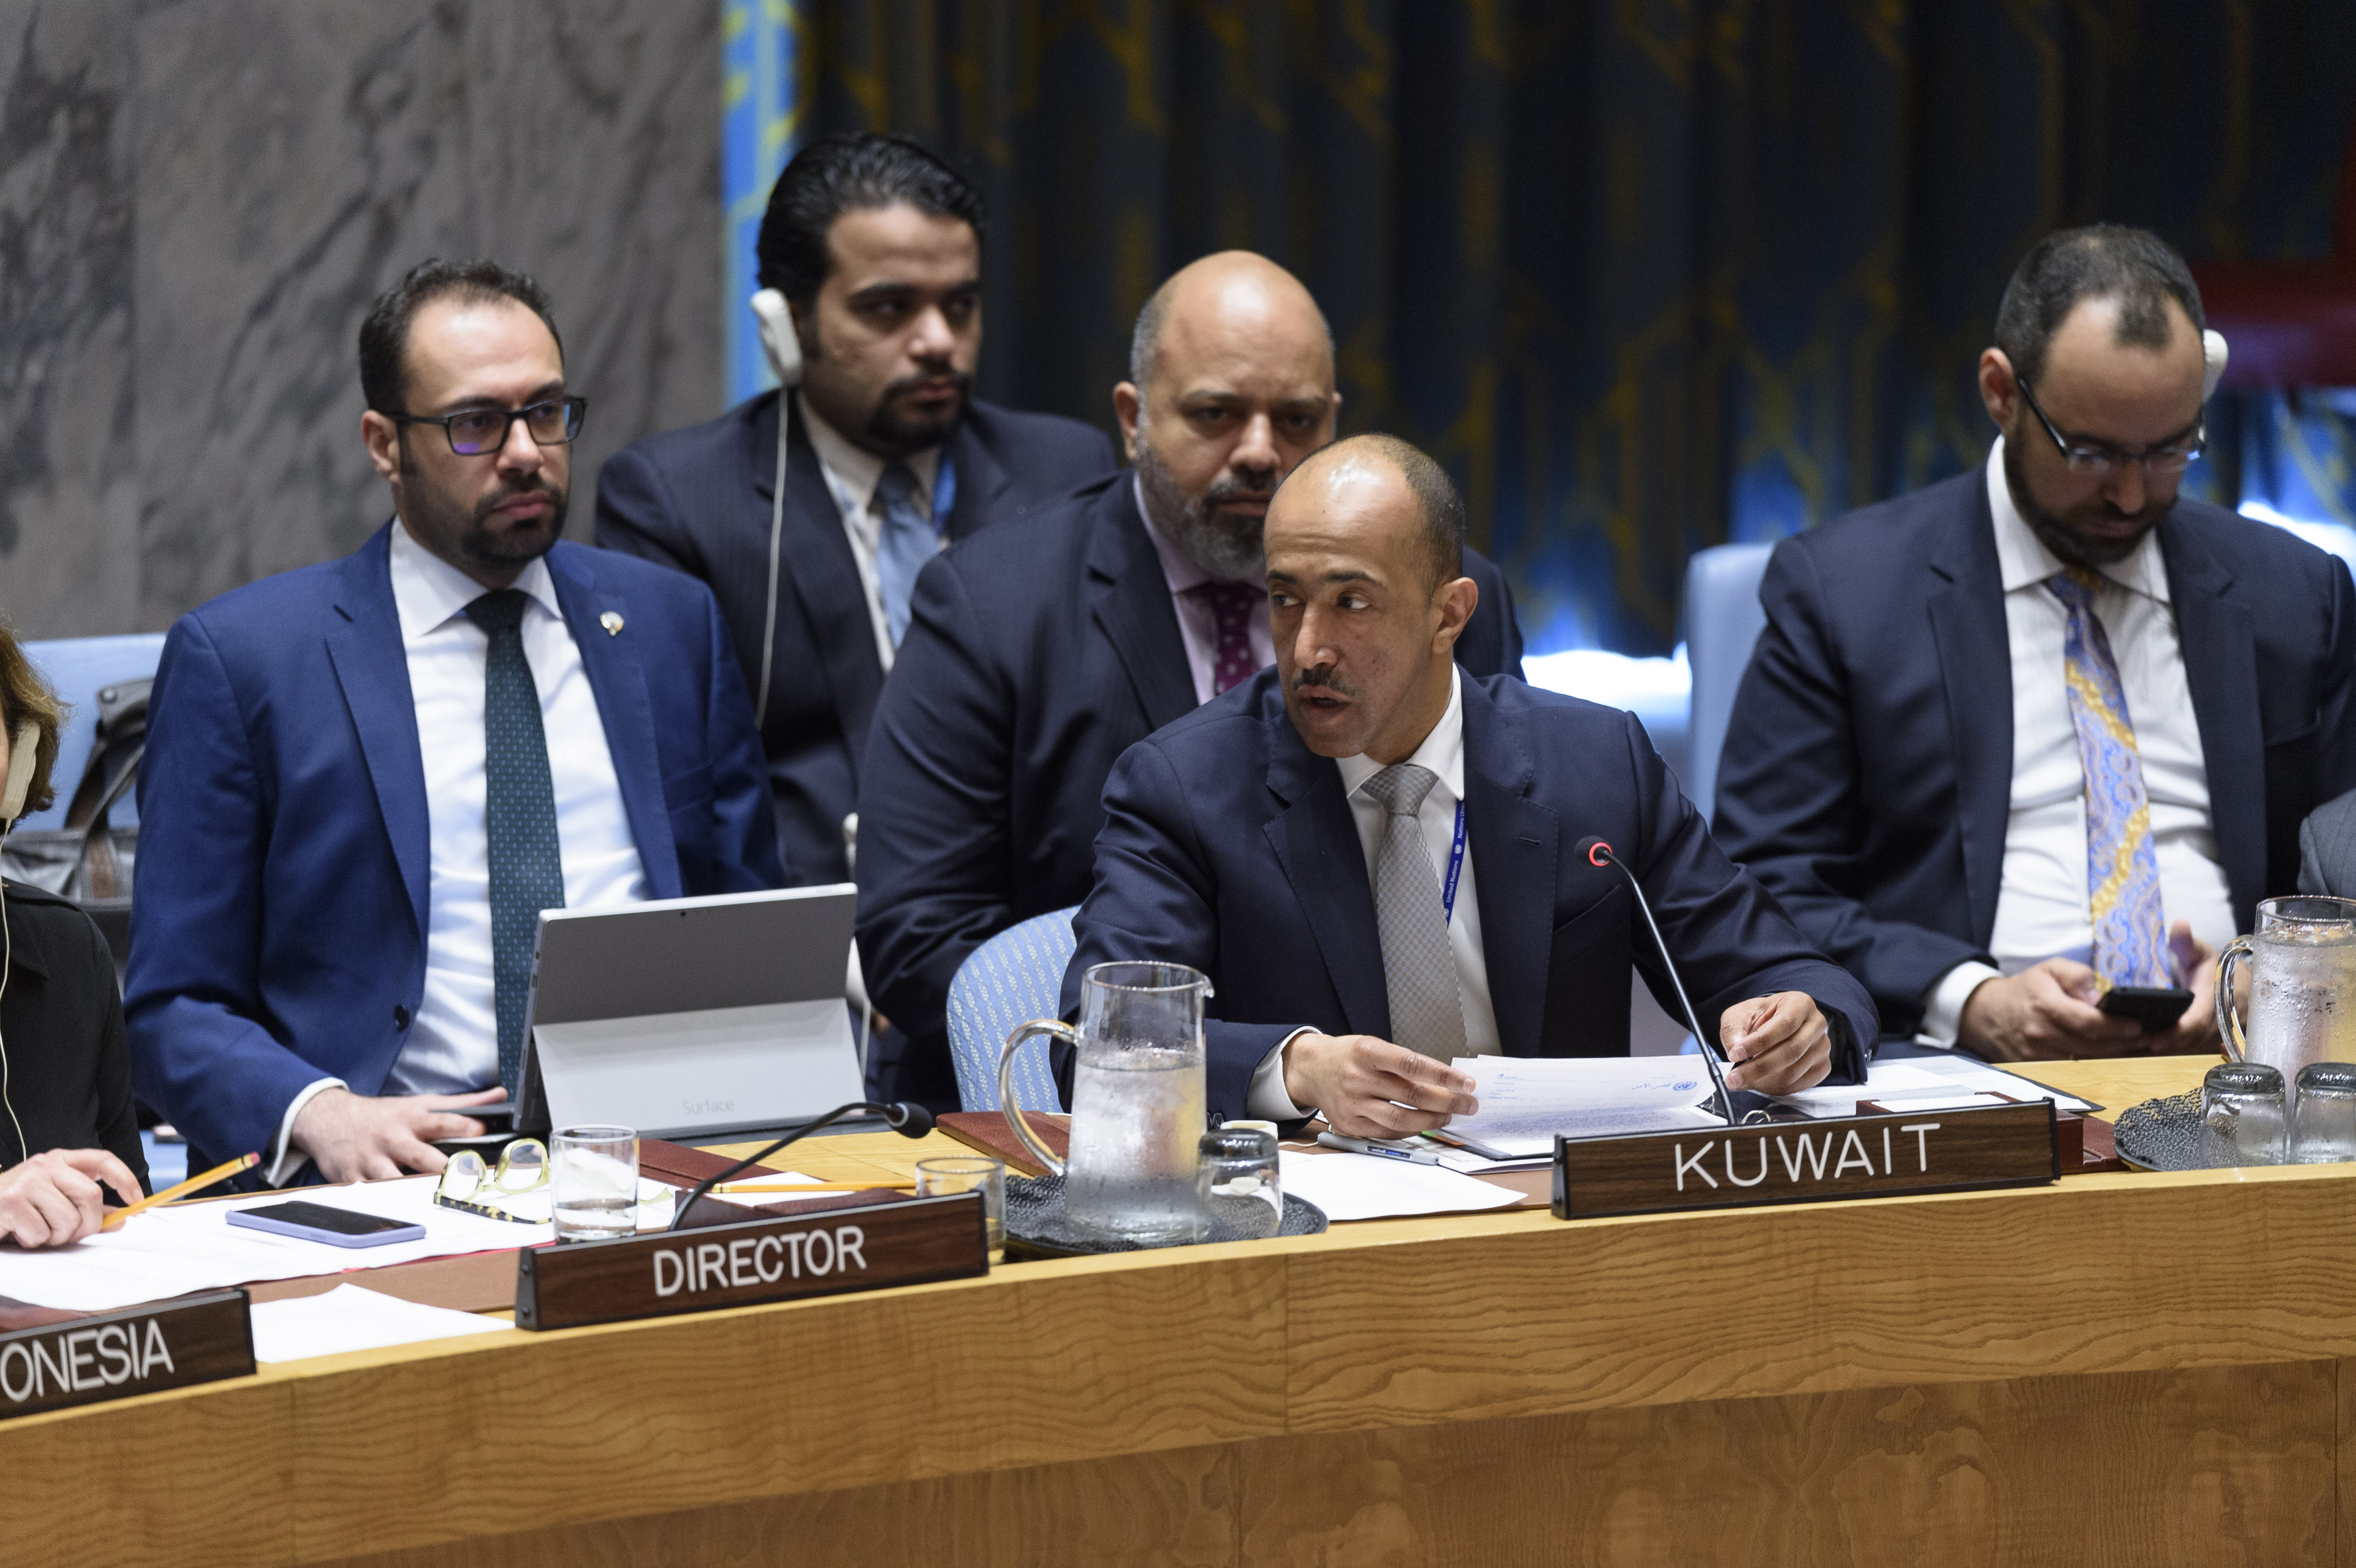 Le chargé d'affaires par intérim de la délégation permanente du Koweït auprès des Nations unies, le conseiller Bader Al-Menikh